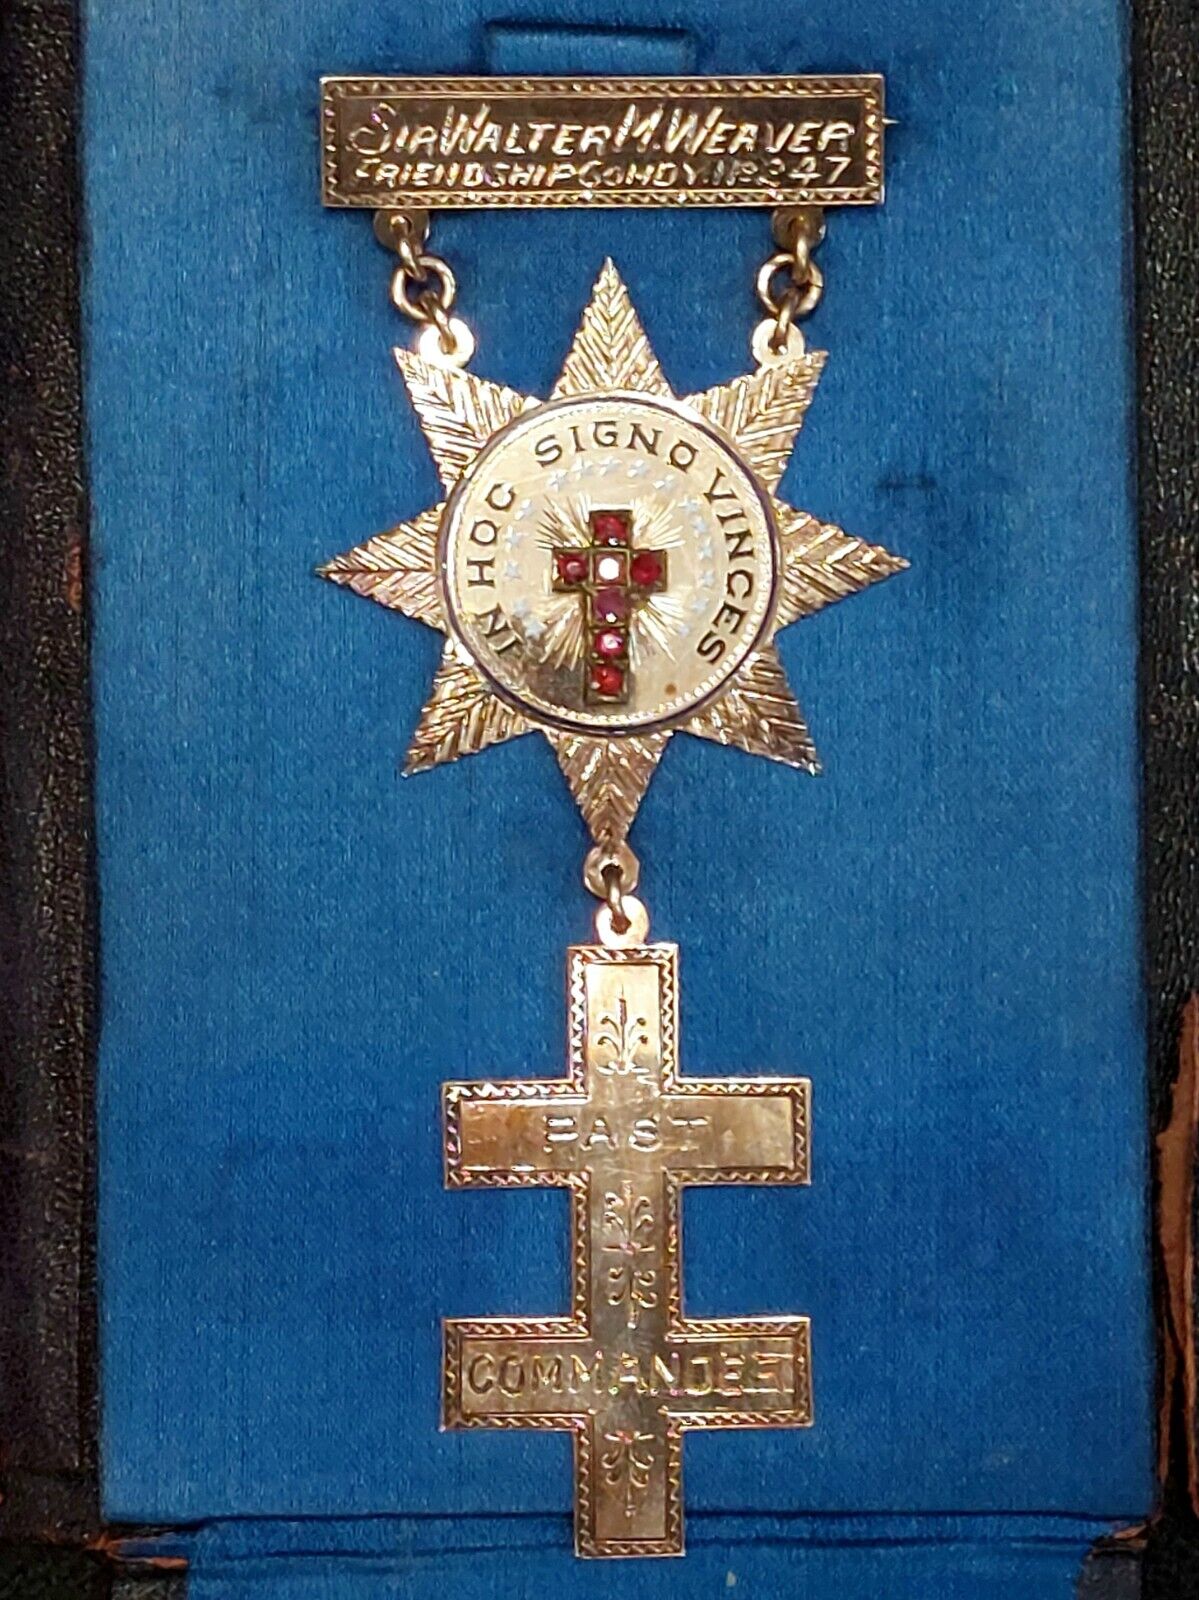 Antique 1900's Medal - Order of Knights Templar of Malta - Past Commander